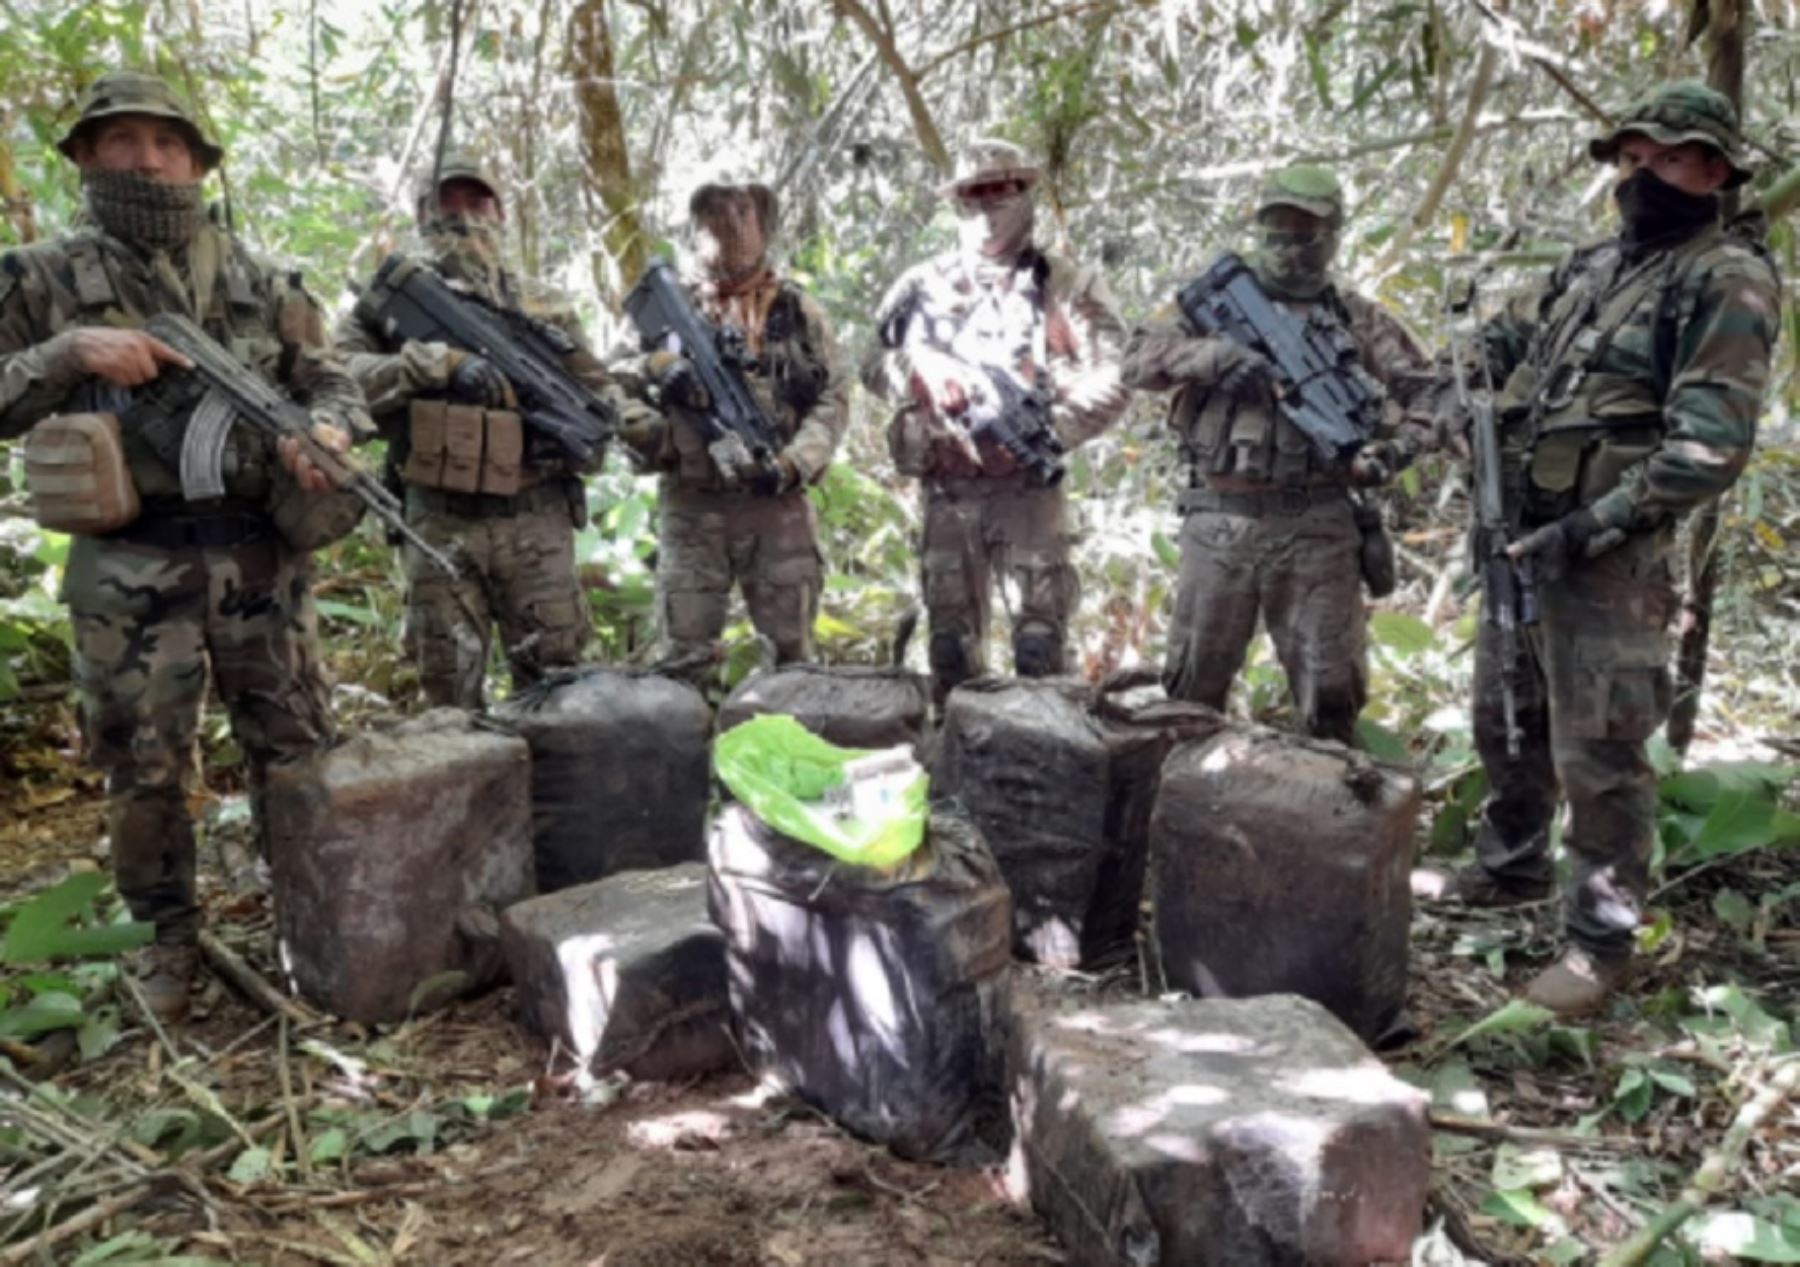 Continuando con la operación integrada “Jucavello”, que lucha contra el tráfico ilícito de drogas, miembros de las Fuerzas Armadas en apoyo a la Policía Nacional del Perú, han incautado, hasta el momento 1,160.95 kilos de alcaloide de cocaína, en el distrito de Megantoni, provincia La Convención, departamento del Cusco.